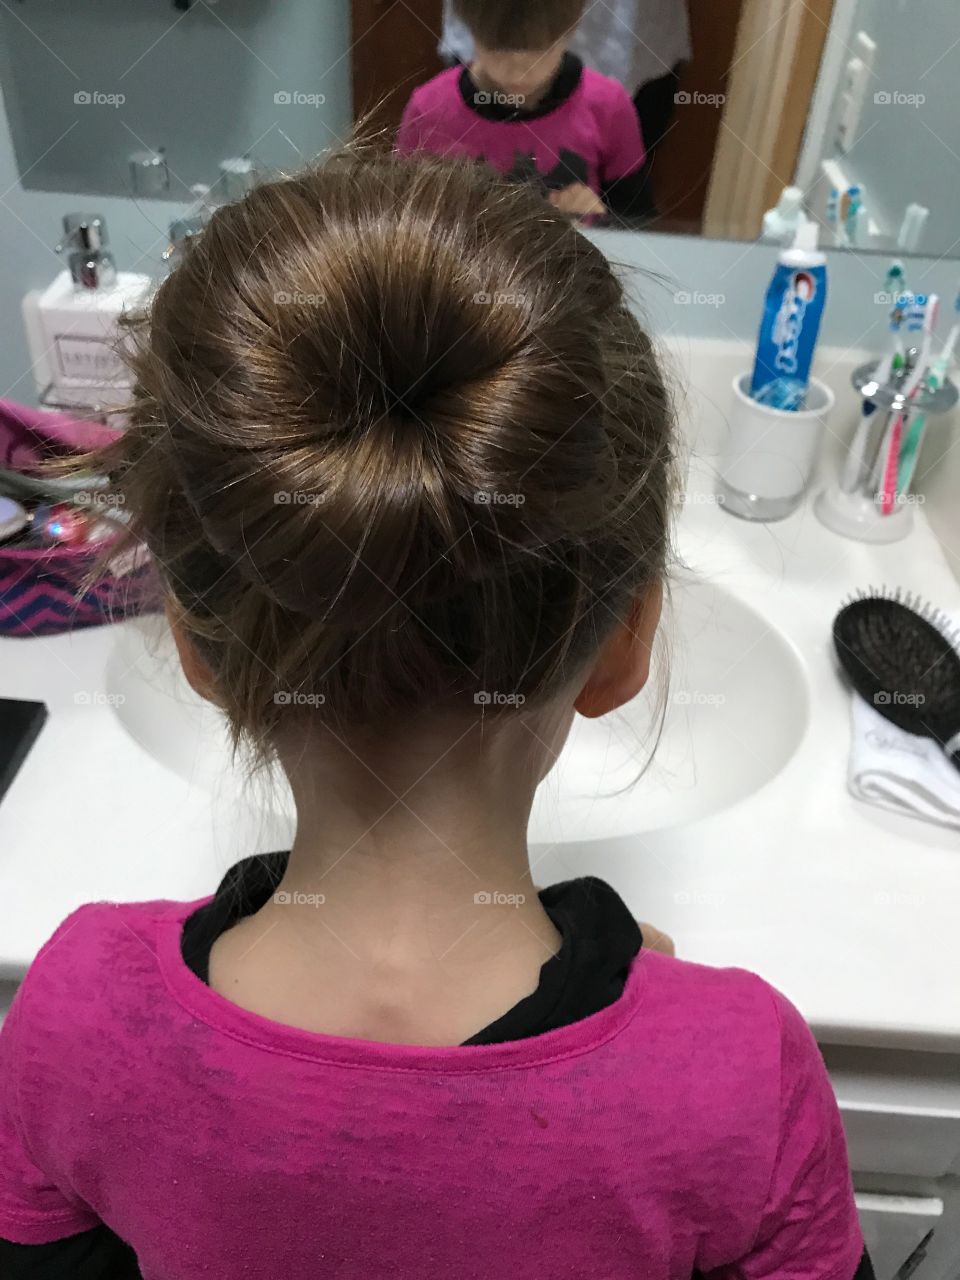 Hair in bun